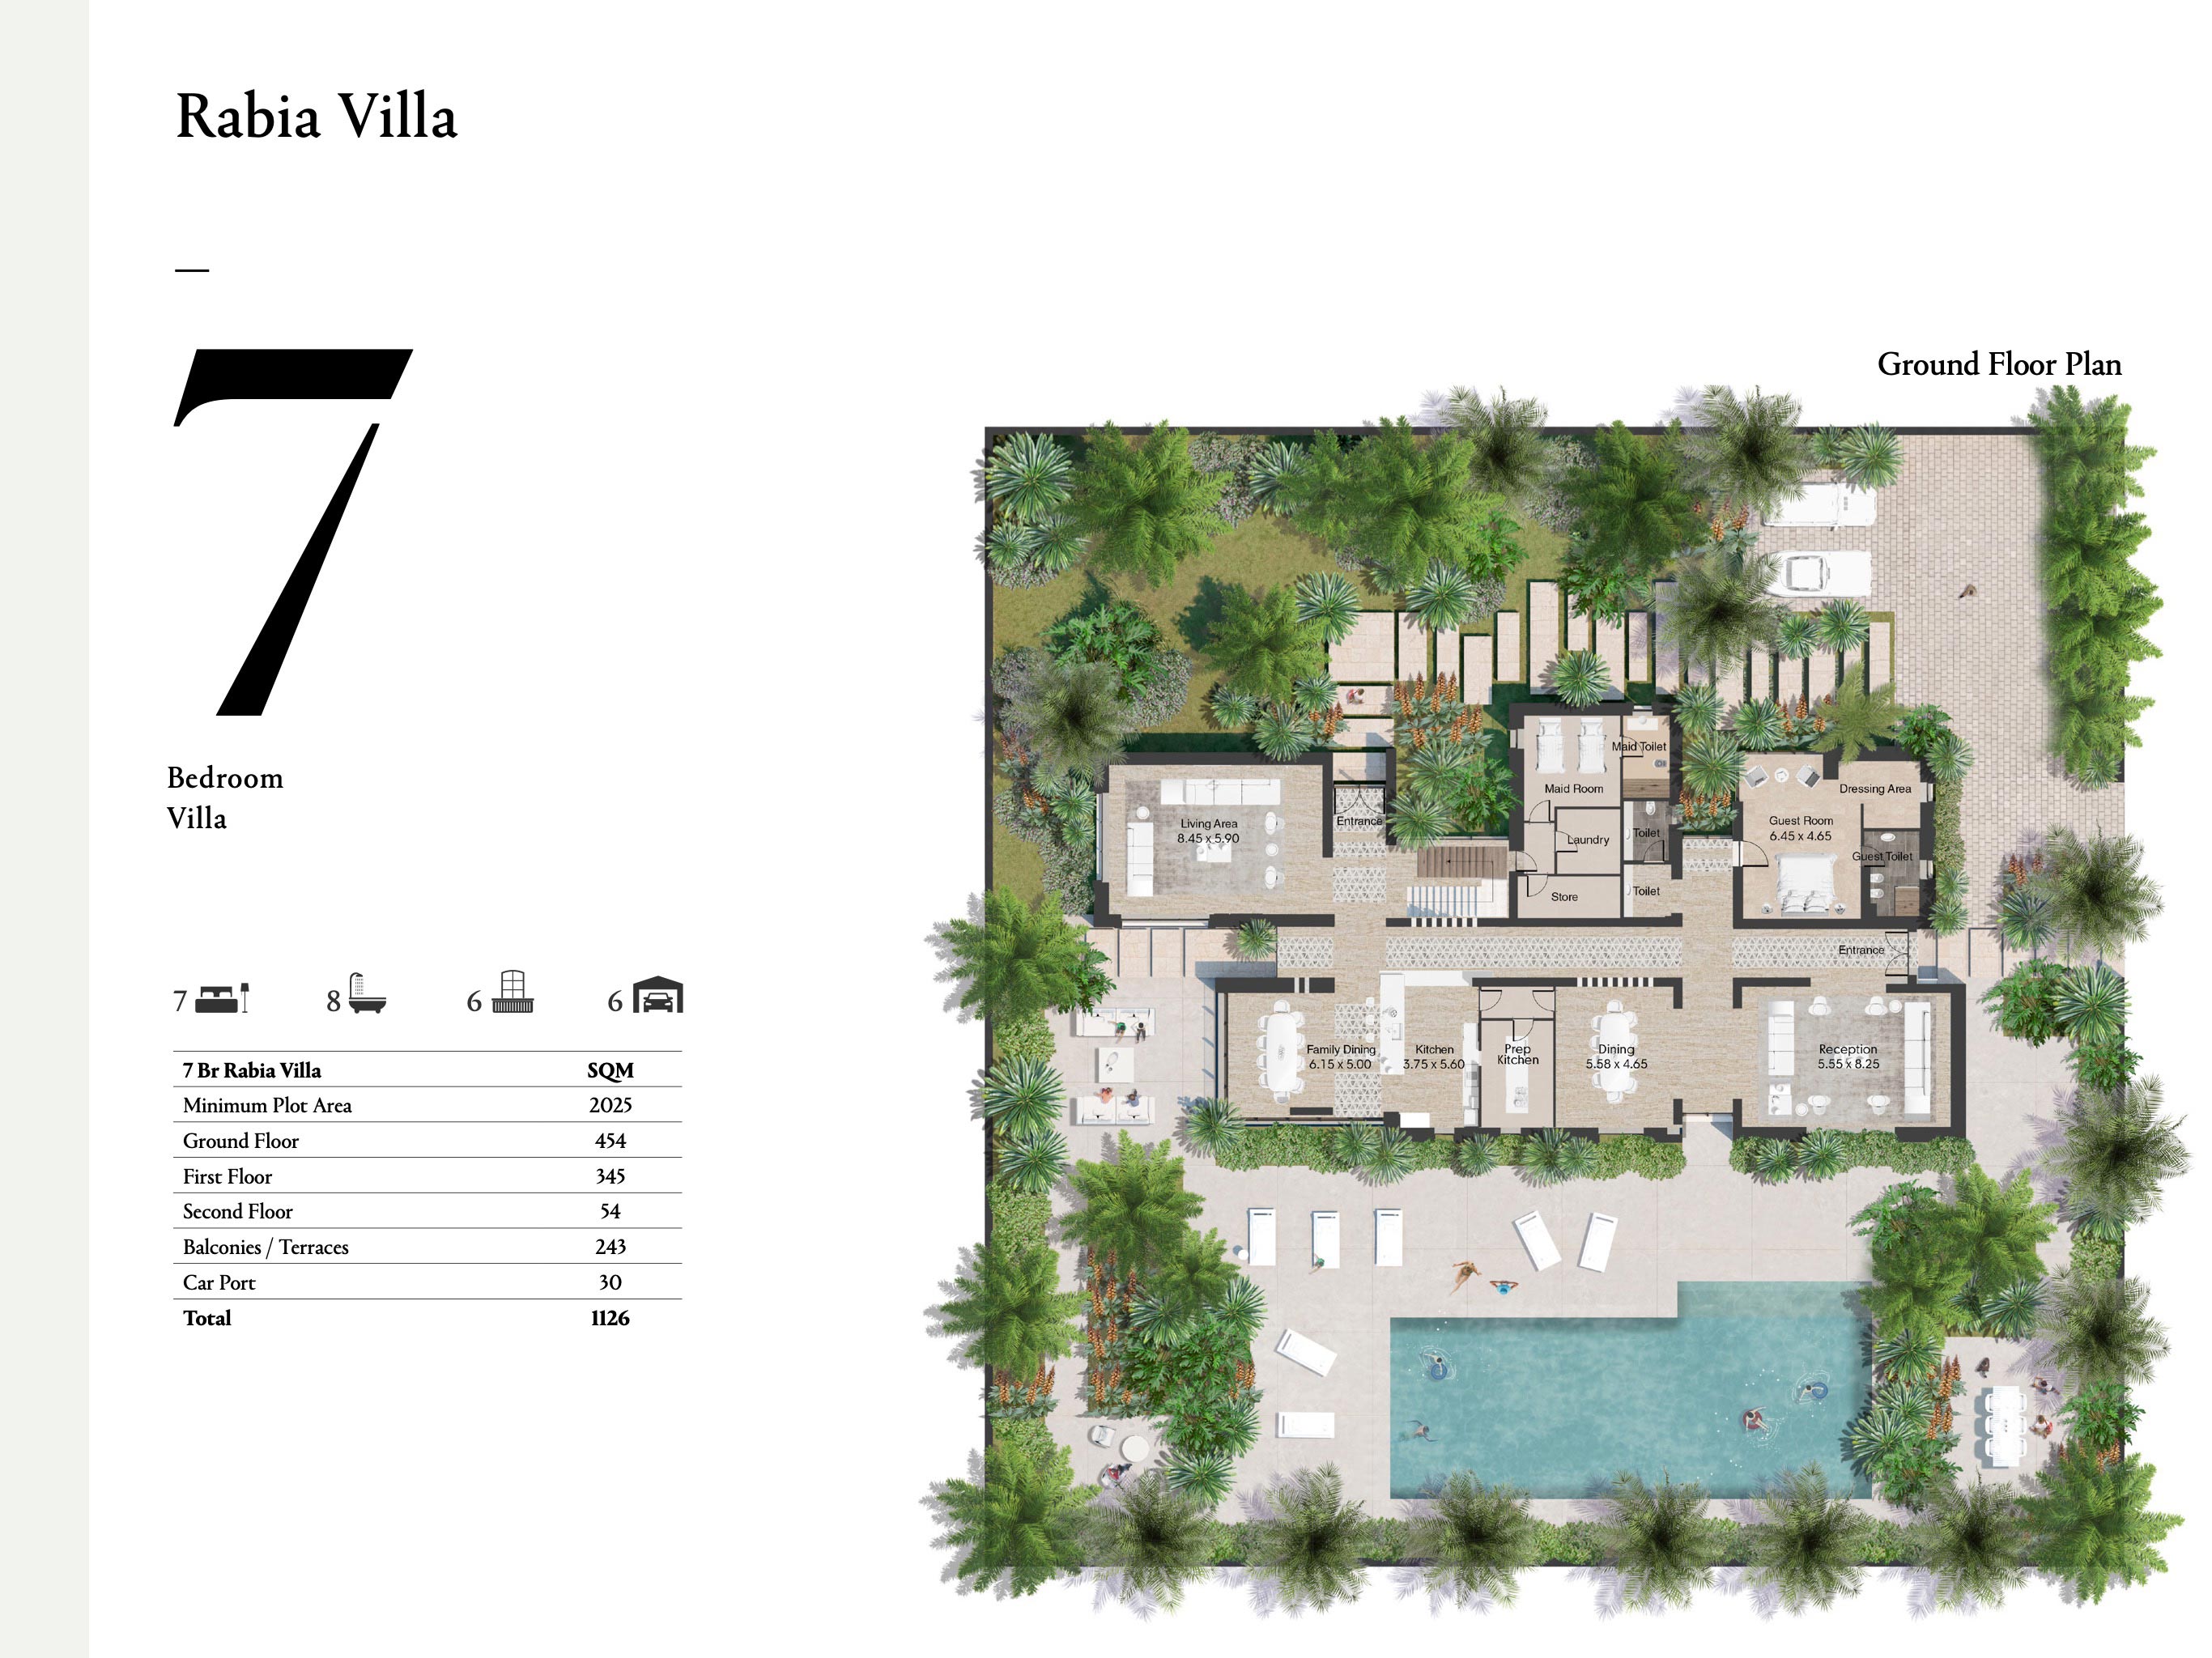 7-Bedroom-Rabia-Villas-Size-1126-sqm